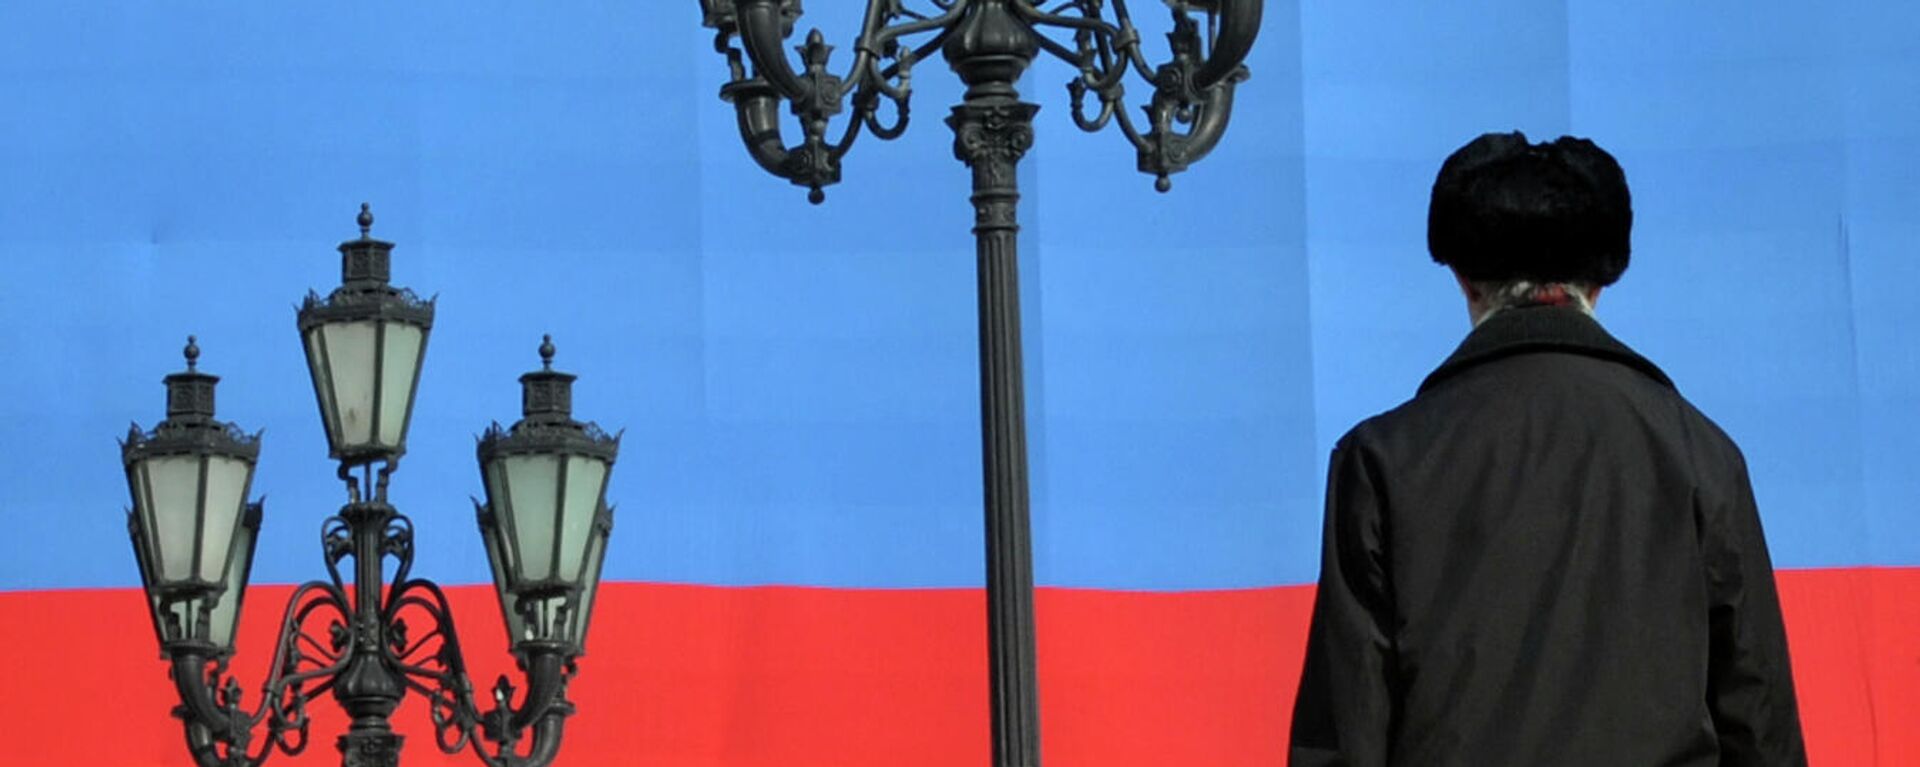 Мужчина на фоне флага России - Sputnik Узбекистан, 1920, 09.11.2021